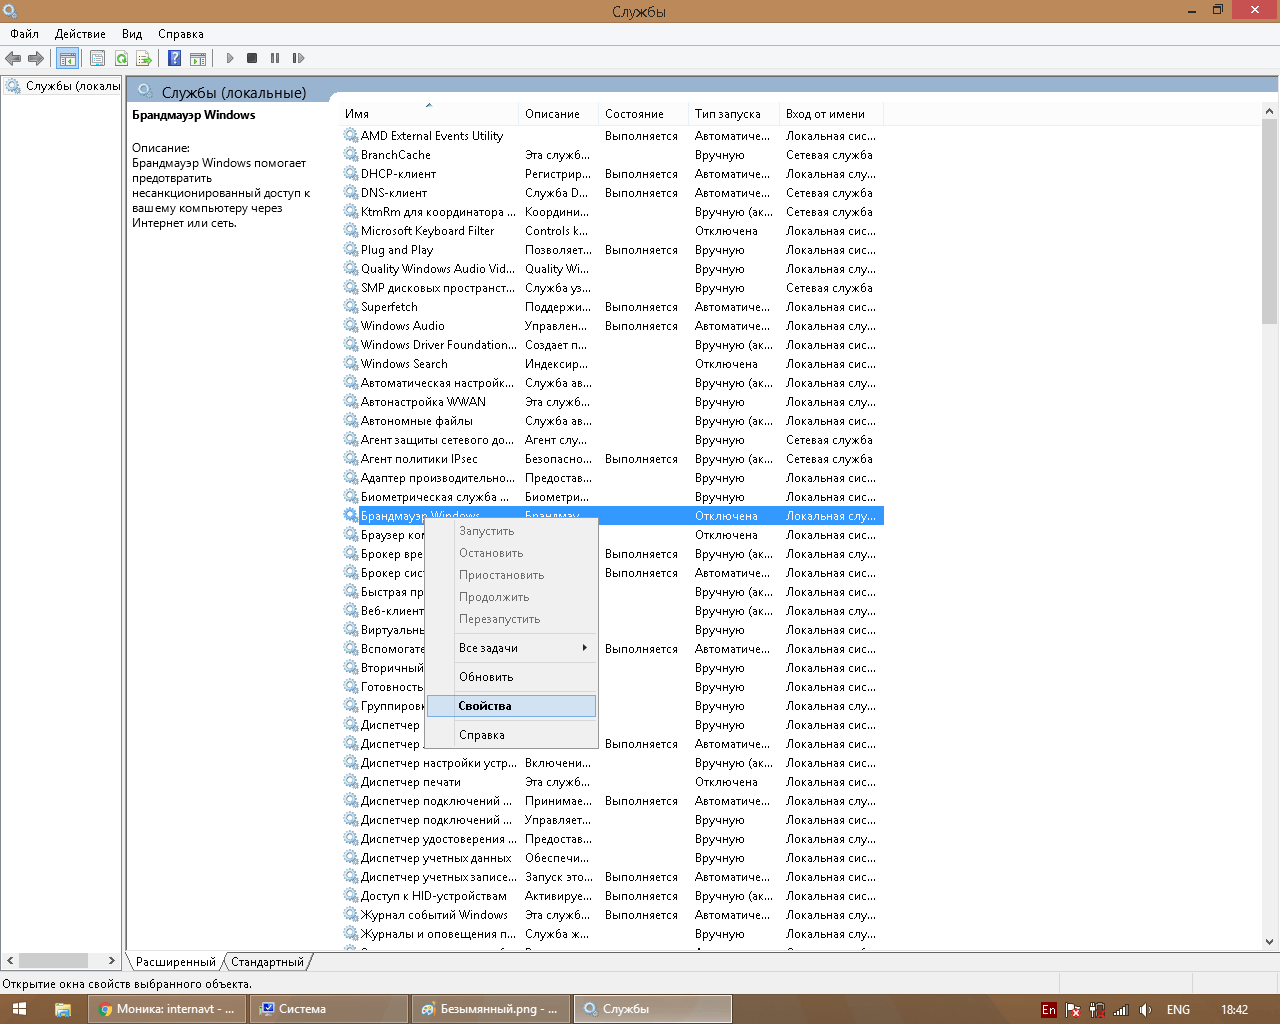 Какие службы можно отключить в windows 10 для оптимизации работы компьютера. инструкция: как отключать службы в windows 10.